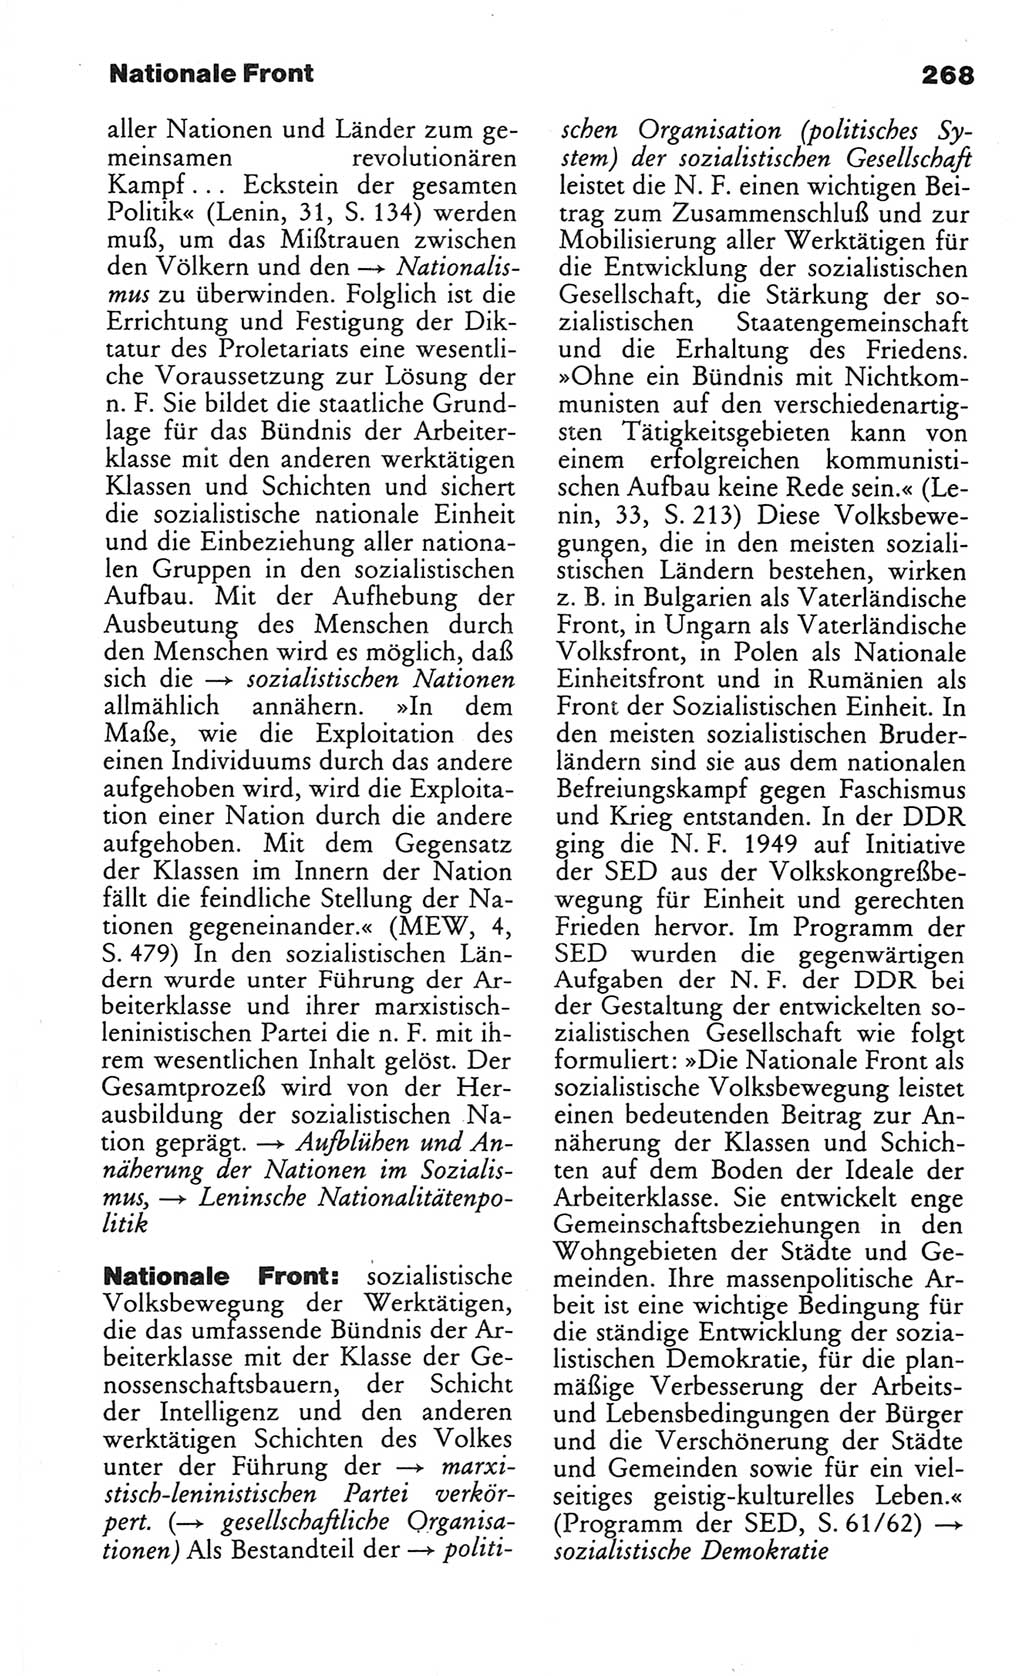 Wörterbuch des wissenschaftlichen Kommunismus [Deutsche Demokratische Republik (DDR)] 1984, Seite 268 (Wb. wiss. Komm. DDR 1984, S. 268)